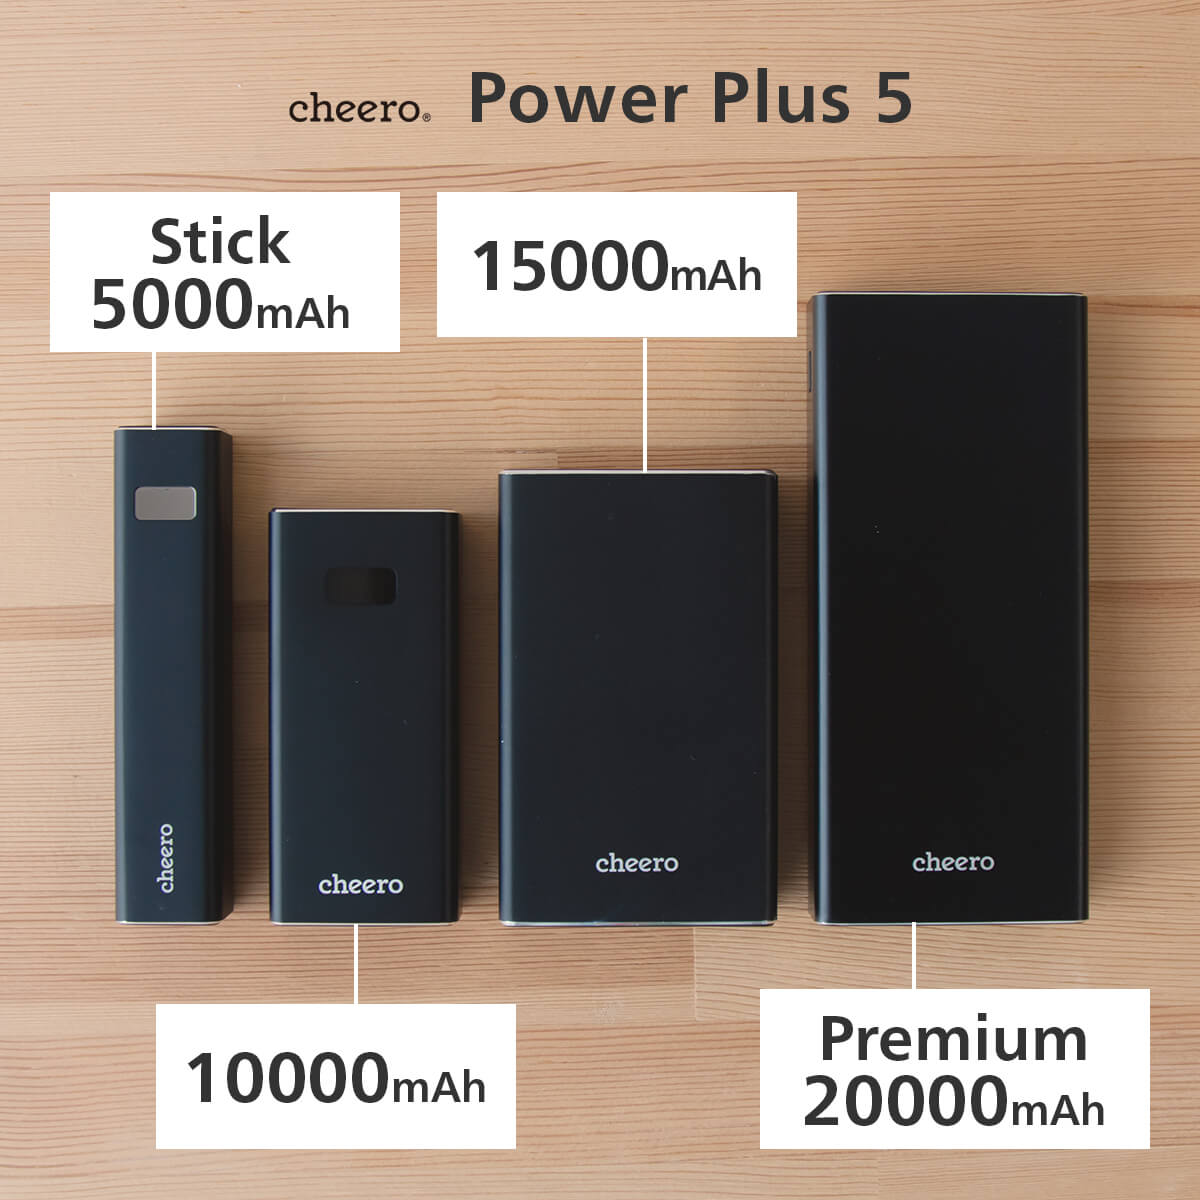 【販売終了】cheero Power Plus 5 Stick 5000mAh with Power Delivery 18W